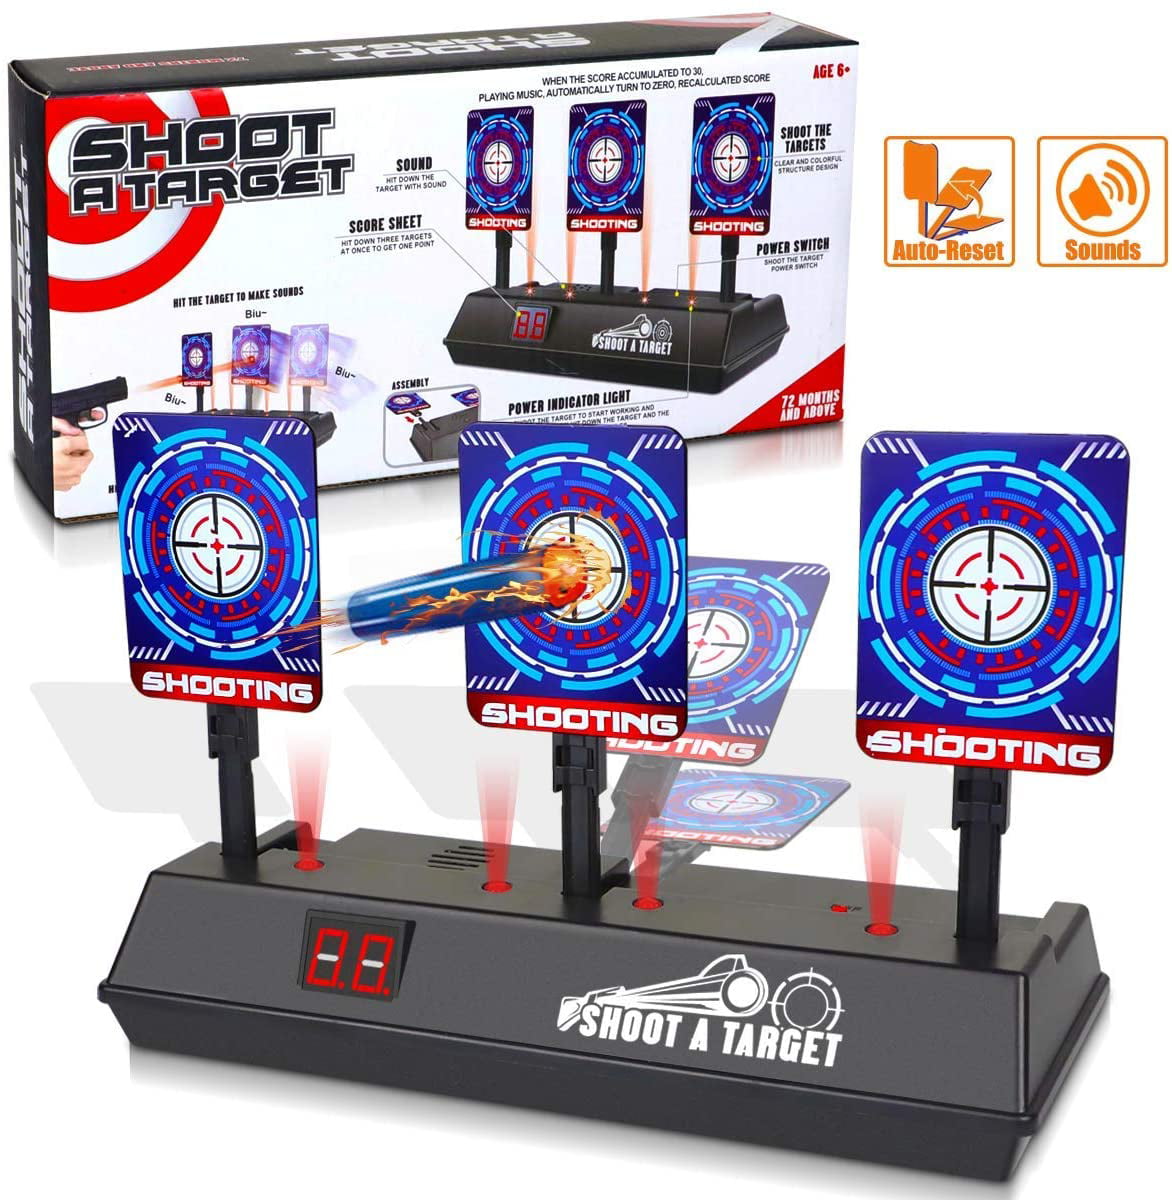 Electric Scoring Auto Reset  Kid Shooting Digital Target for Nerf Gun Toy Gift 